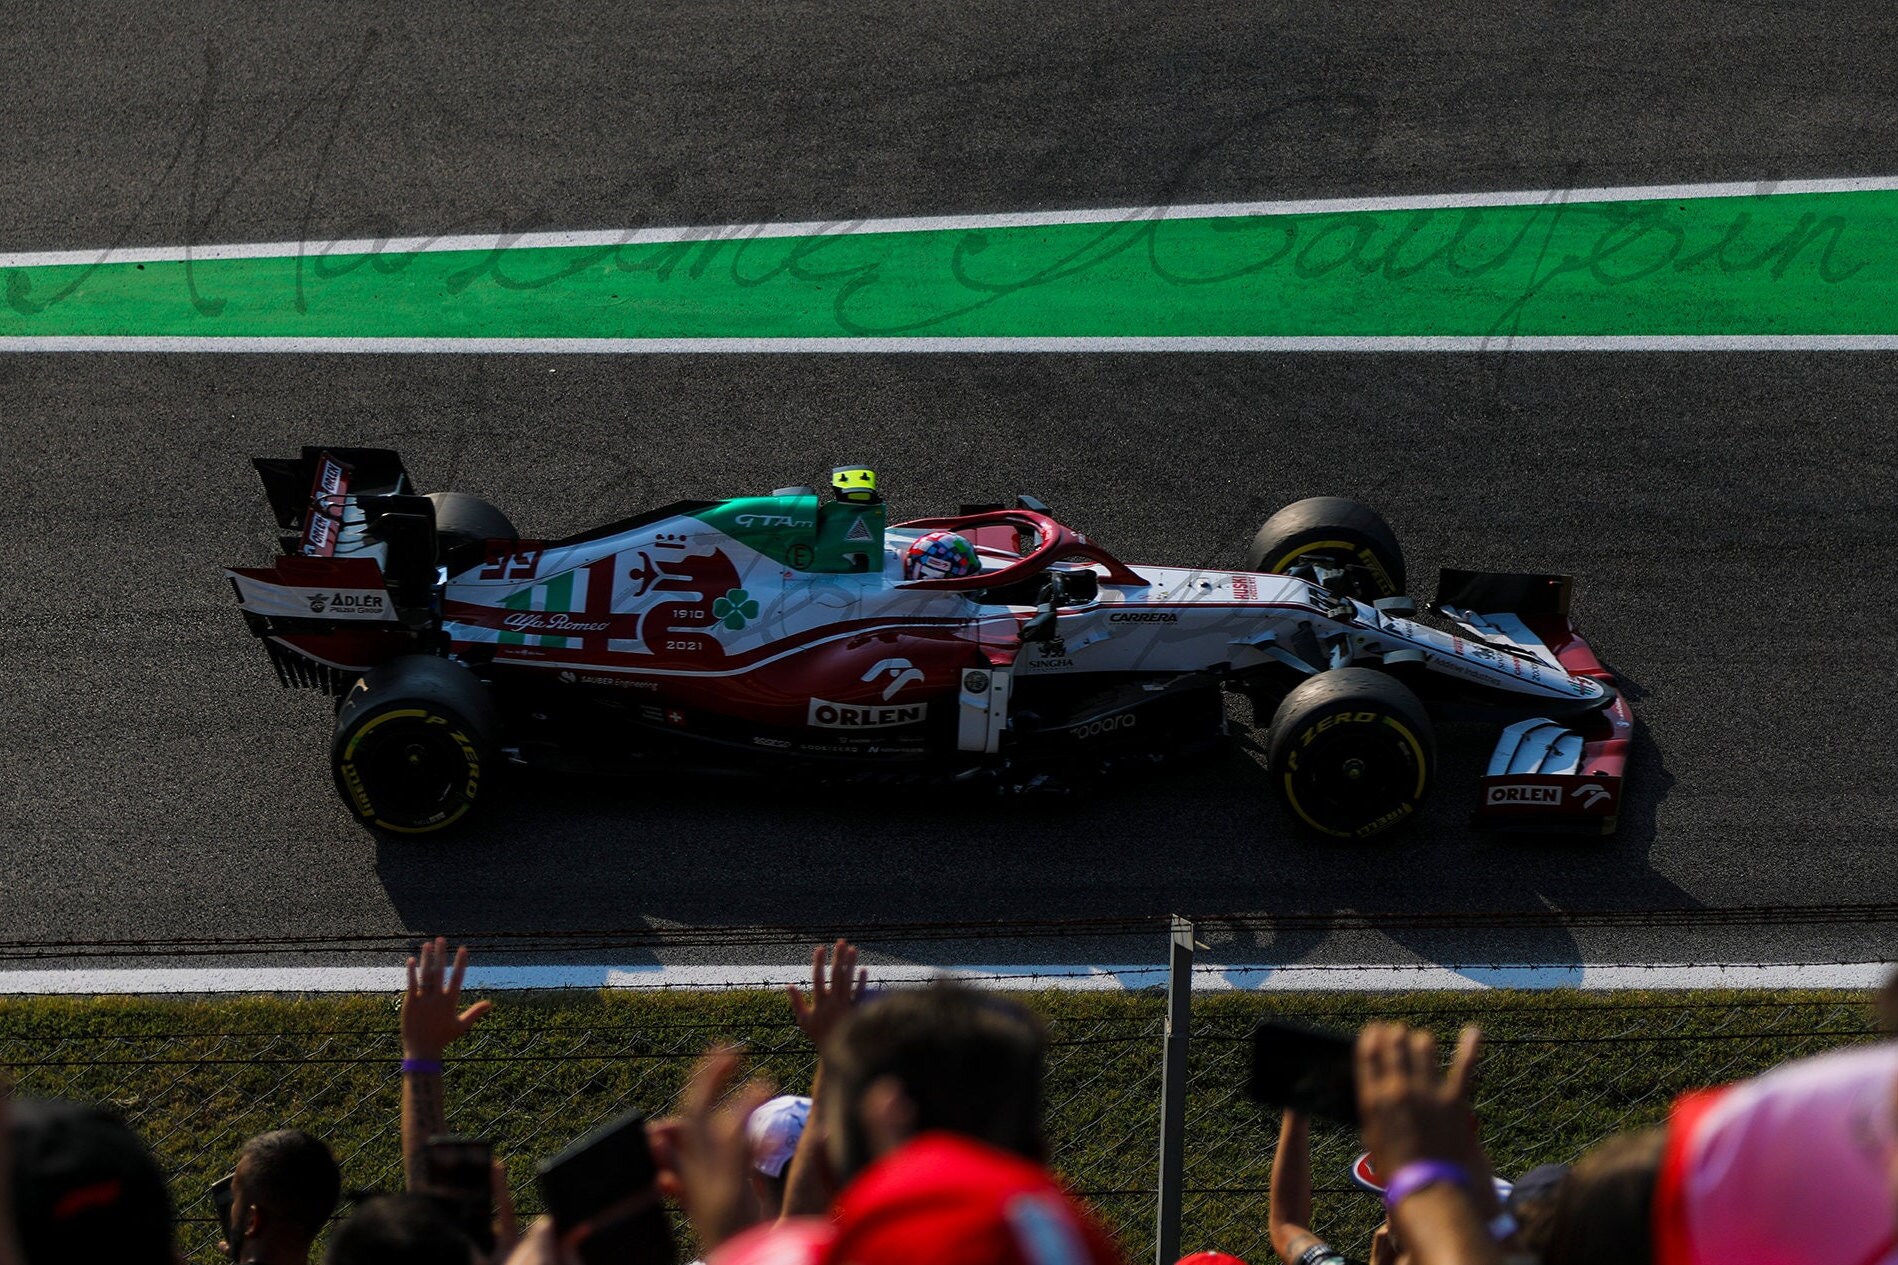 Antonio Giovinazzi at the 2021 Italian Grand Prix Antonio Giovinazzi at 2021s Italian Grand Prix.